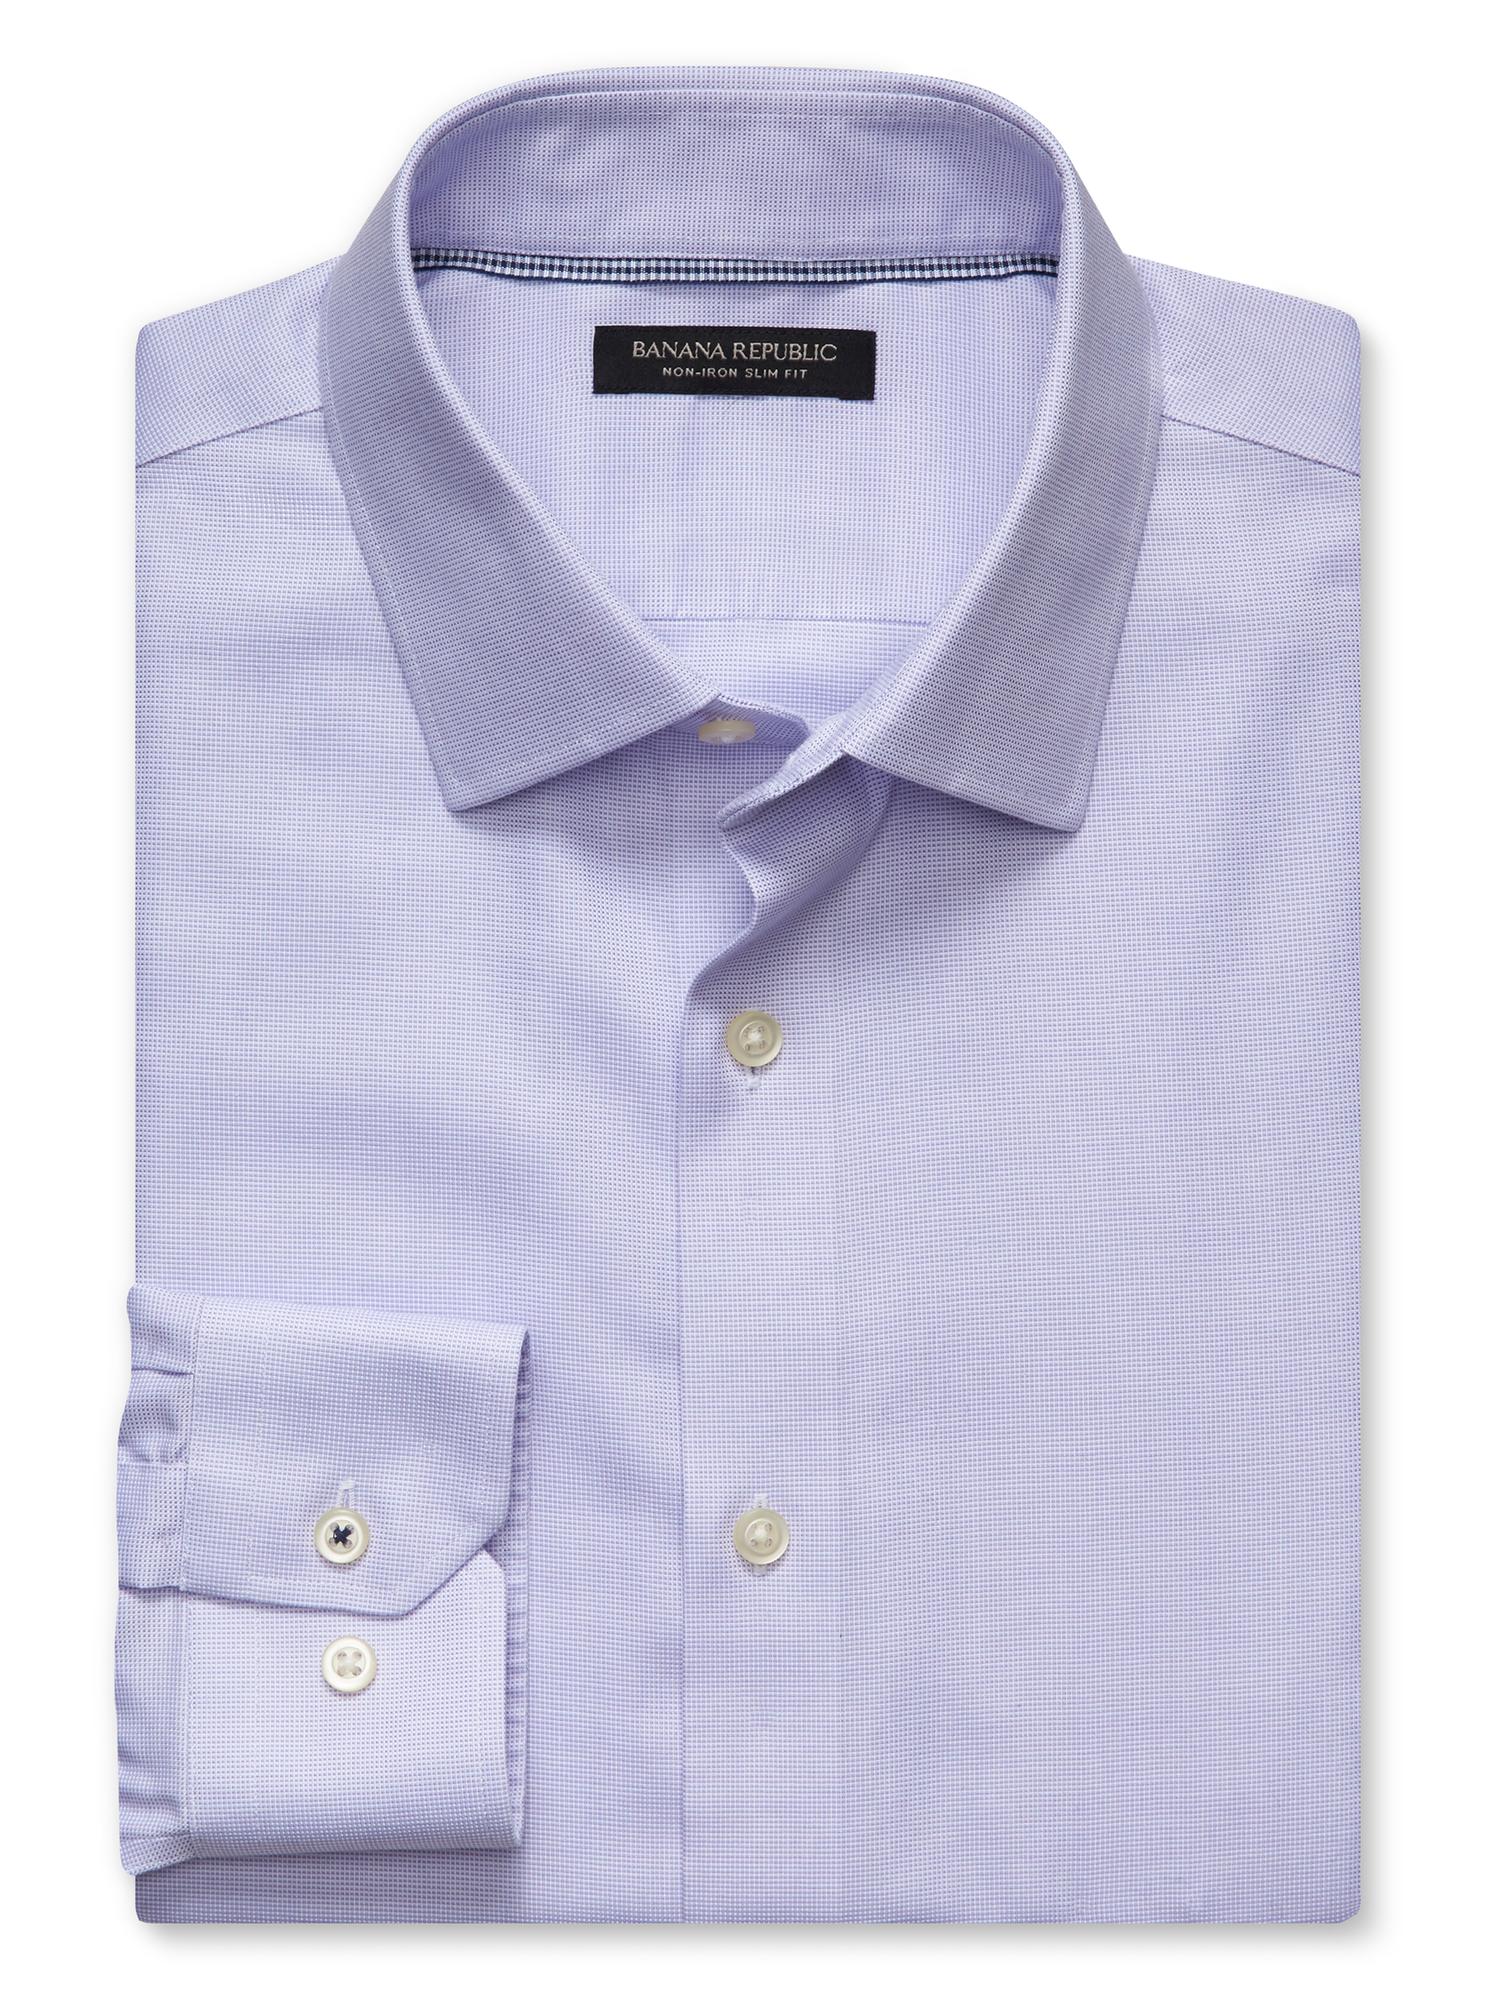 Camden Standard-Fit Non-Iron Birdseye Dress Shirt